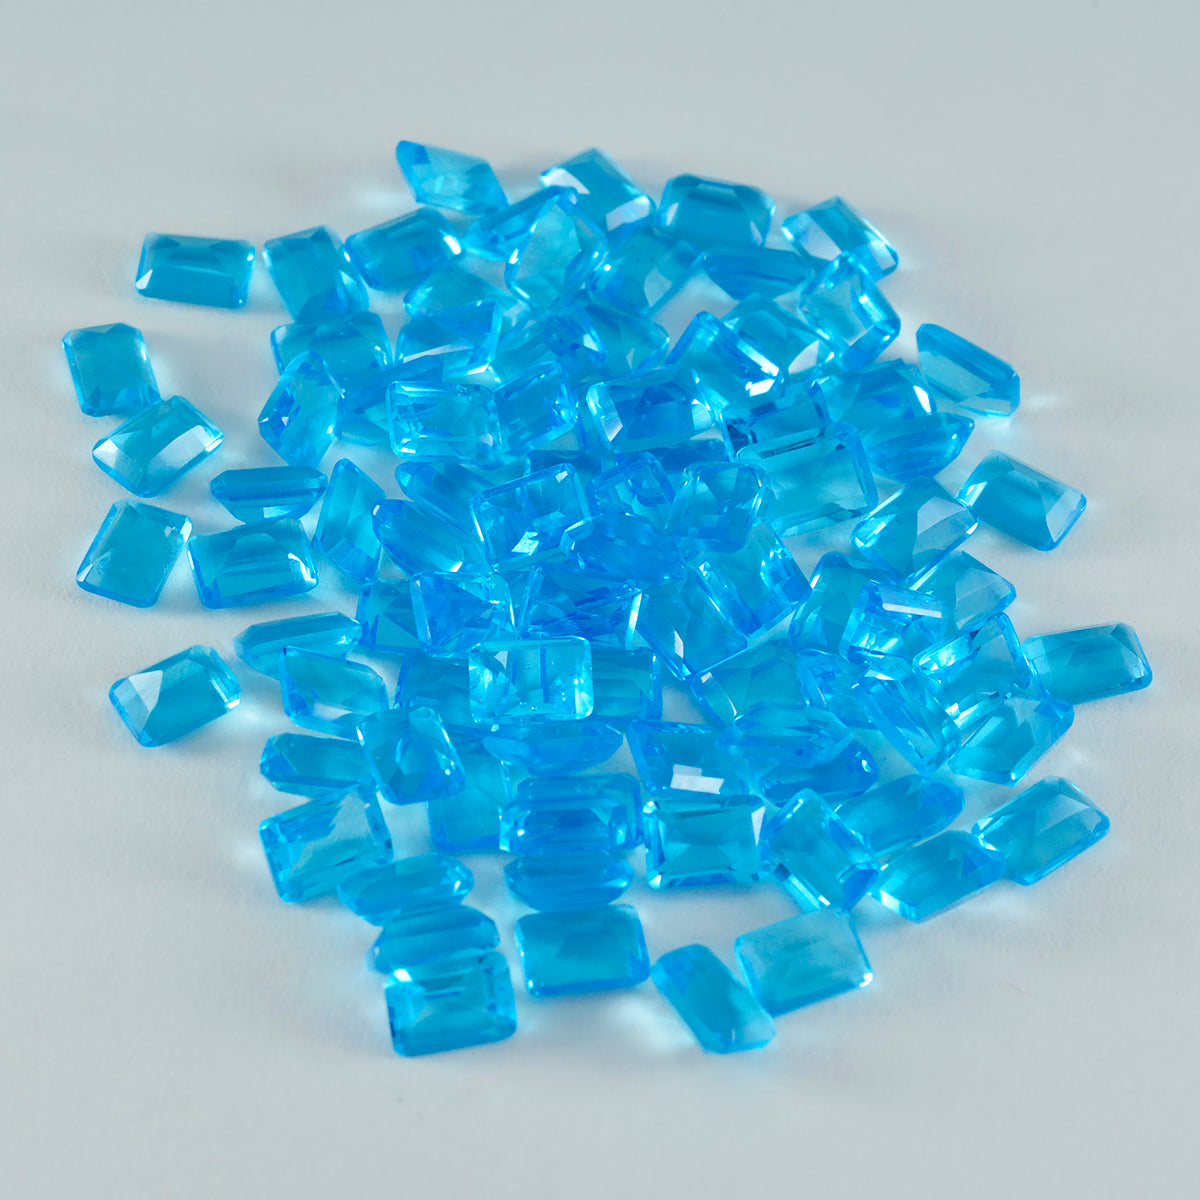 riyogems 1шт синий топаз cz граненый 3х5 мм восьмиугольная форма качество сыпучий драгоценный камень